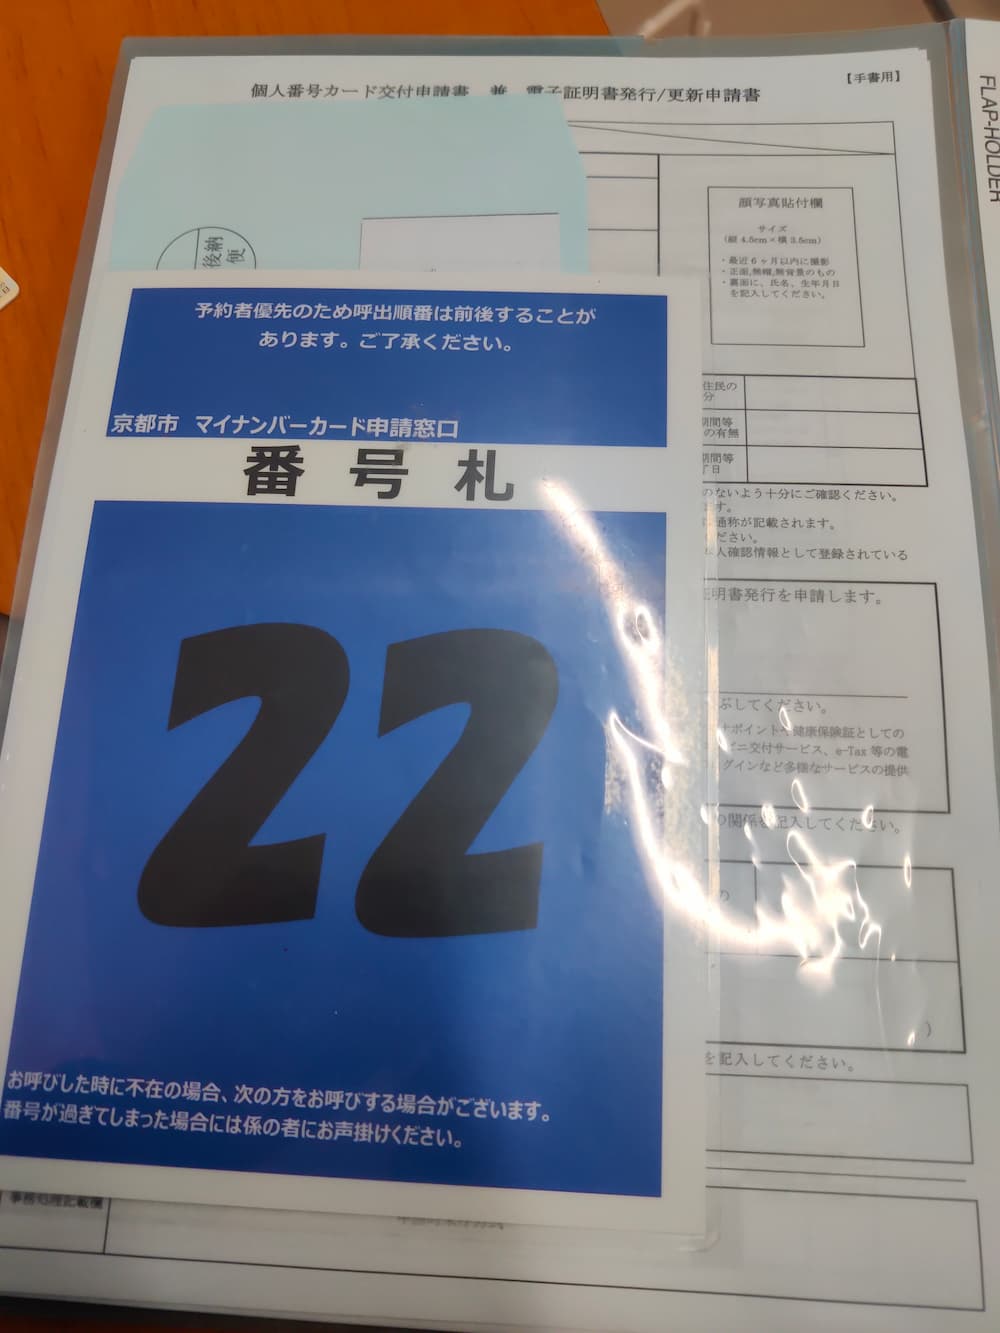 my number card 申请.jpg